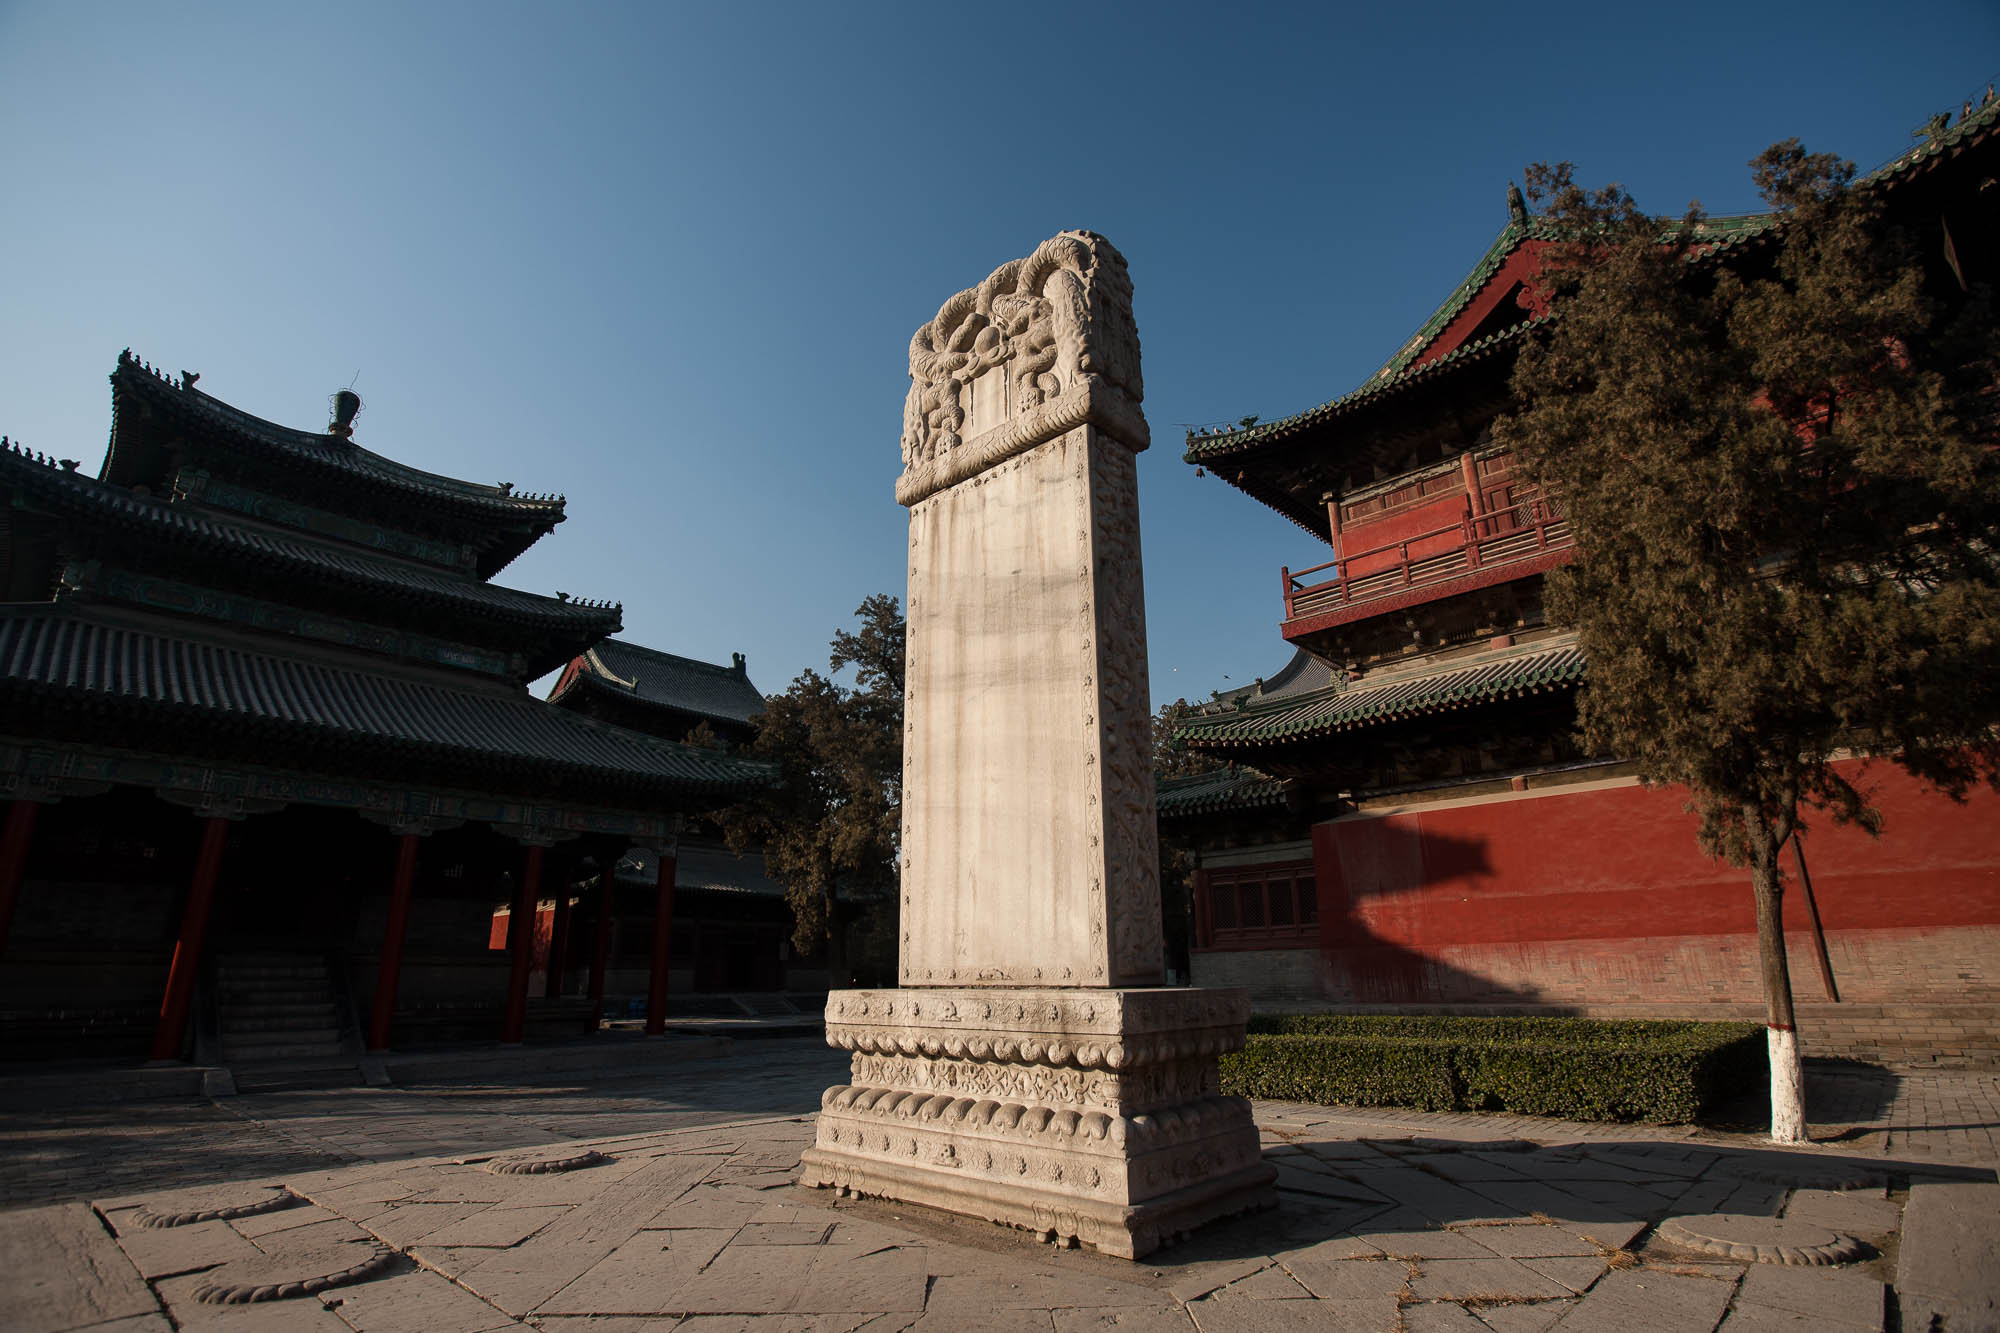 Longxing Temple in Zhengding